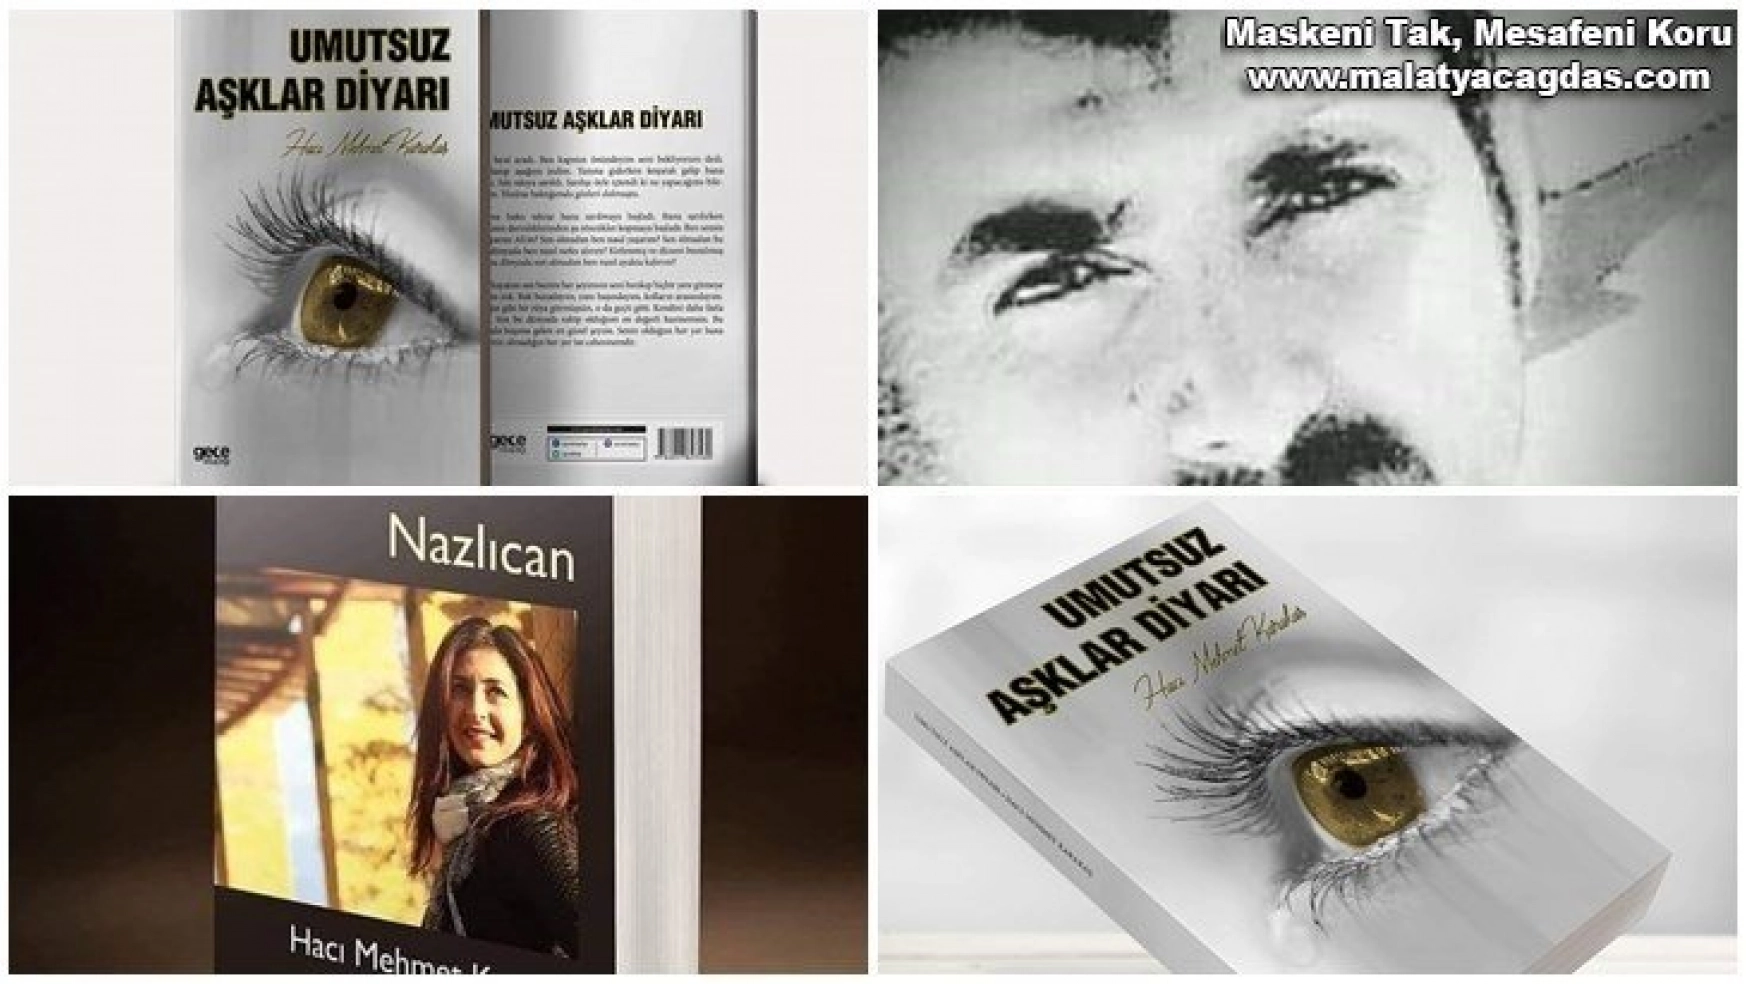 Ege İnci'nin Yazar Hacı Mehmet Karakaş İle Röportajı​​​​​​​